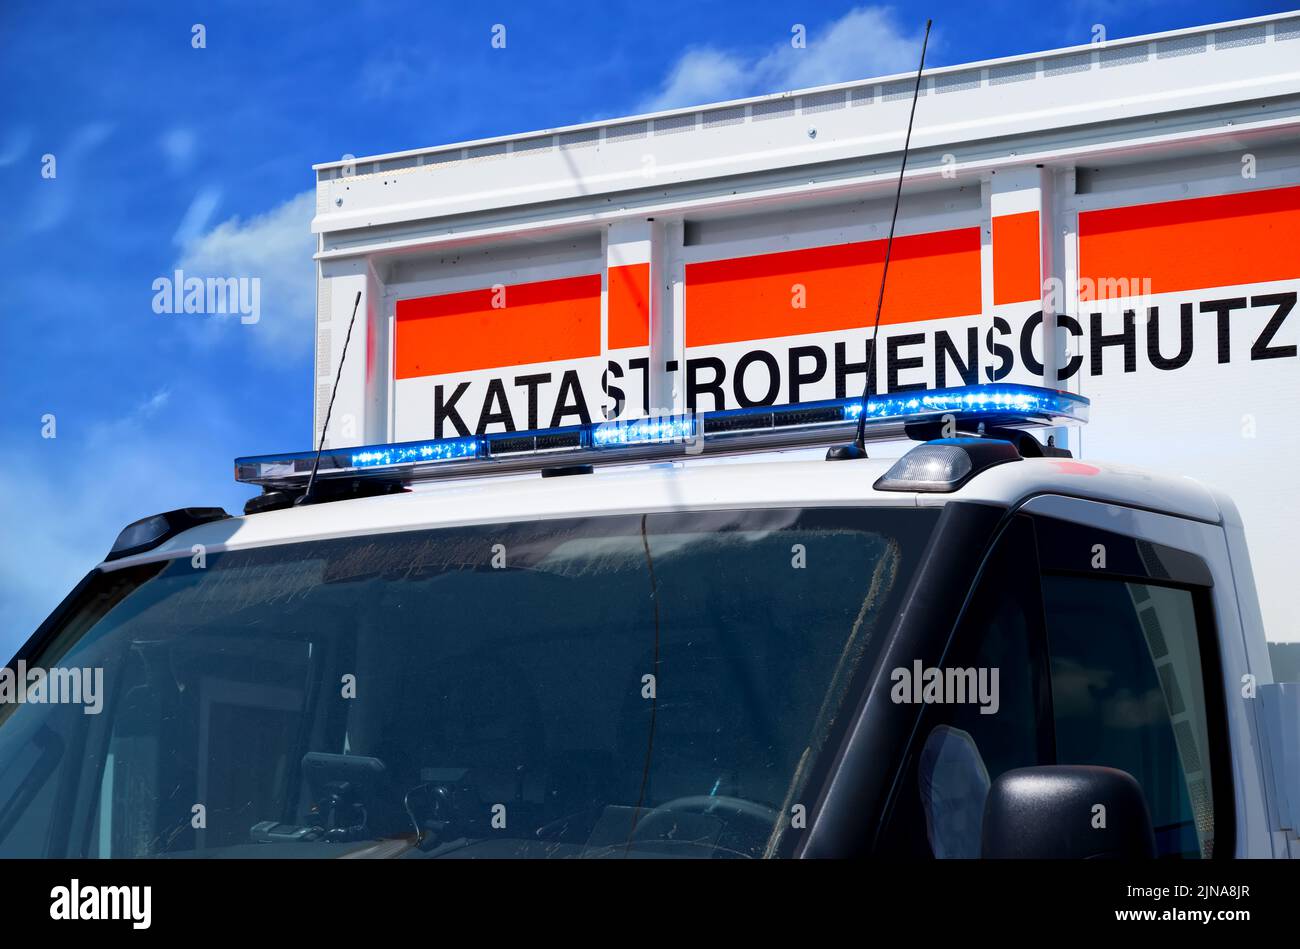 Véhicule d'urgence avec le lettering de protection contre les catastrophes – Katastrophenschutz Einsatzfahrzeug Banque D'Images